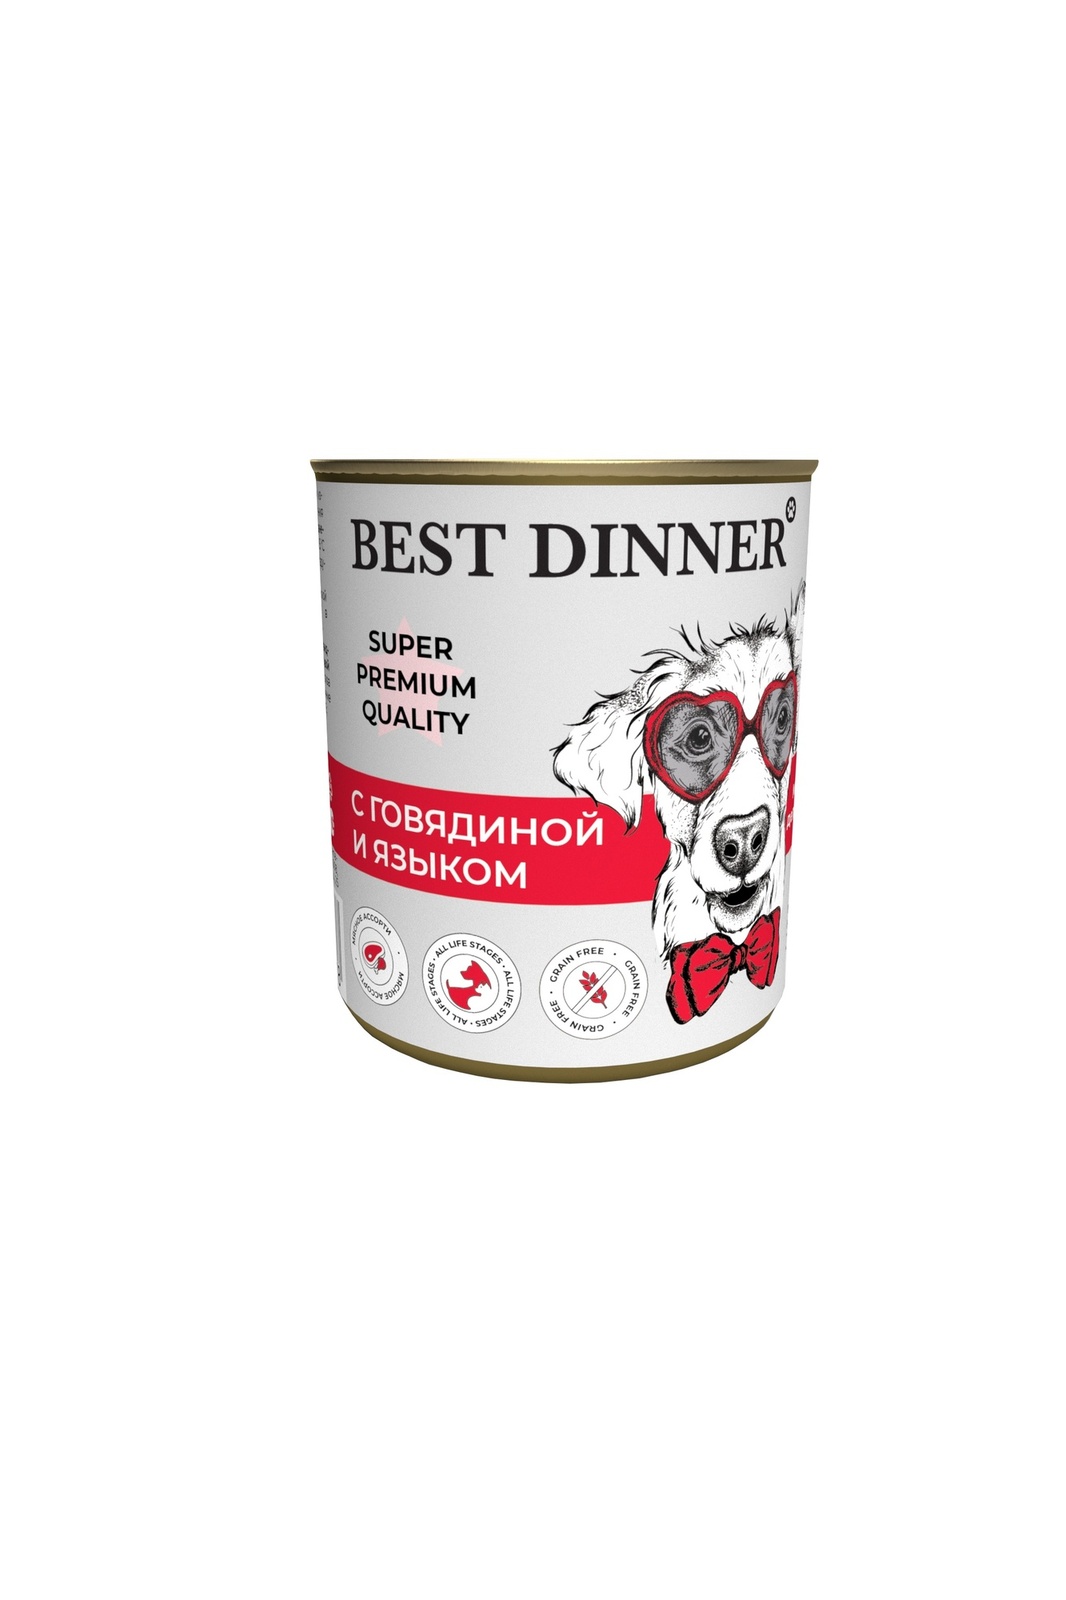 Best Dinner Best Dinner консервы для собак Super Premium С говядиной и языком (340 г) best dinner best dinner консервы ягненок с сердцем для собак с чувствительным пищеварением 340 г